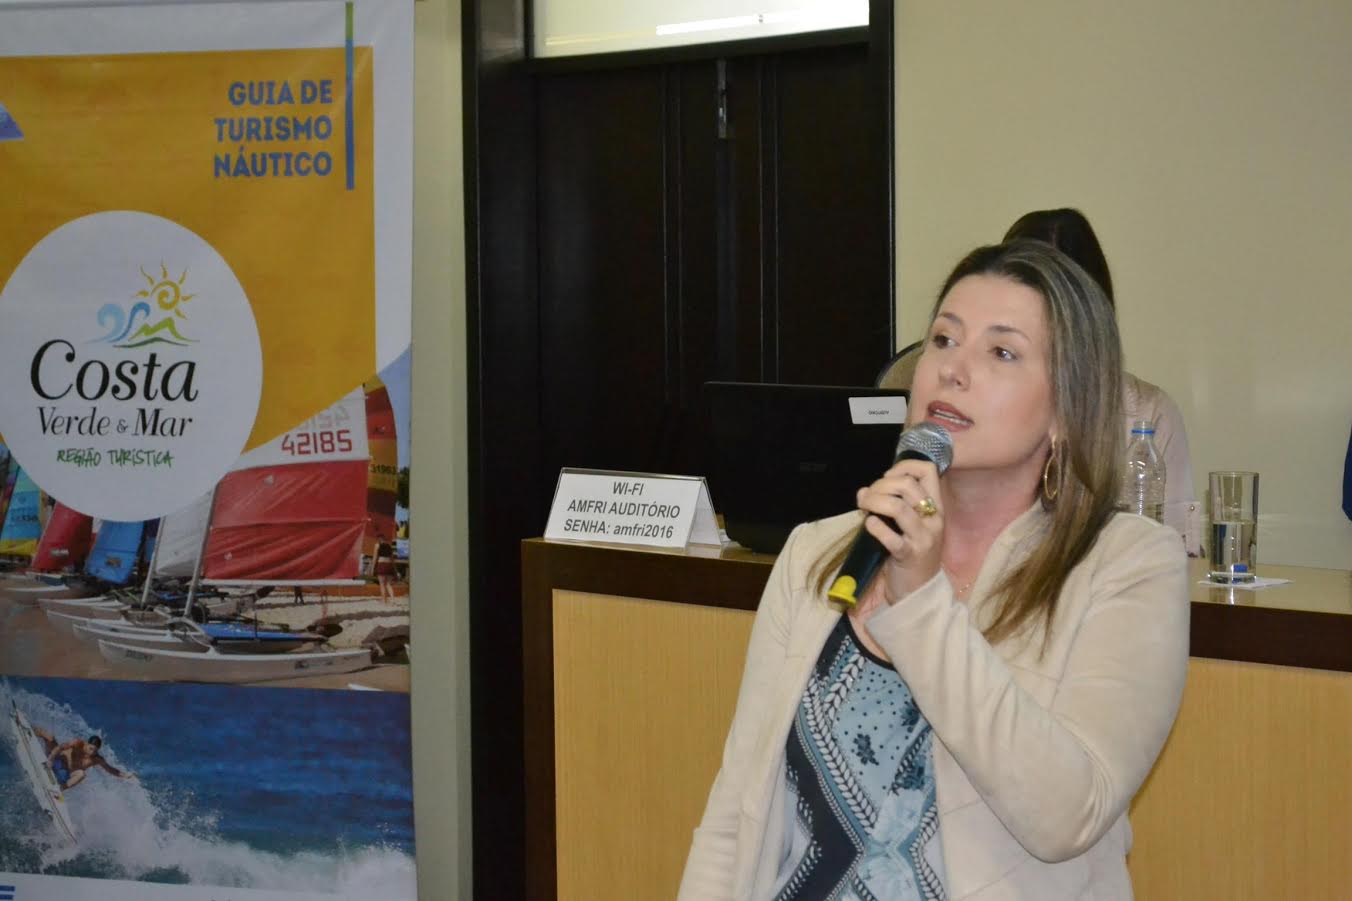 Guia Náutico da Costa Verde & Mar será apresentado na BNT Mercosul